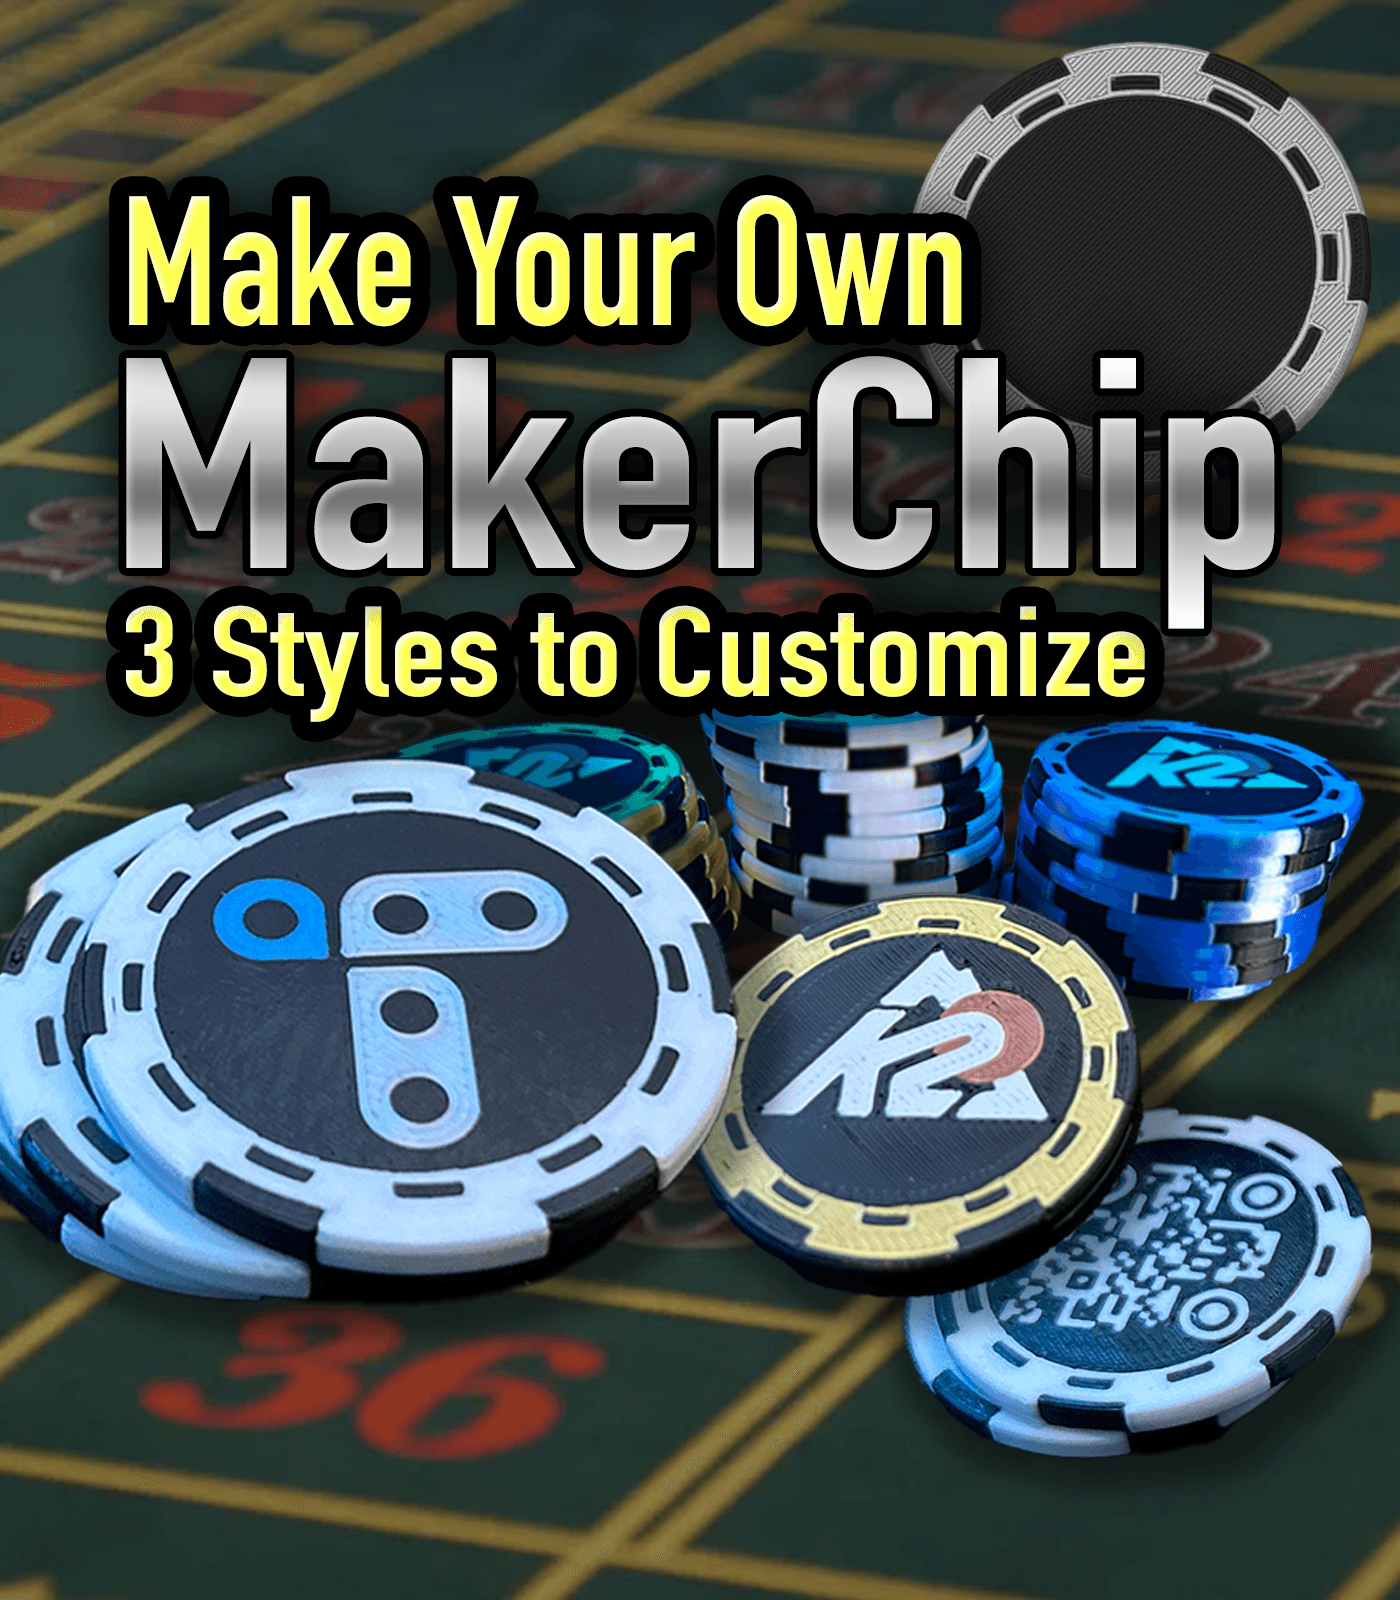 MakerChip Starter Pack - Make your Own Maker Chip 3d model